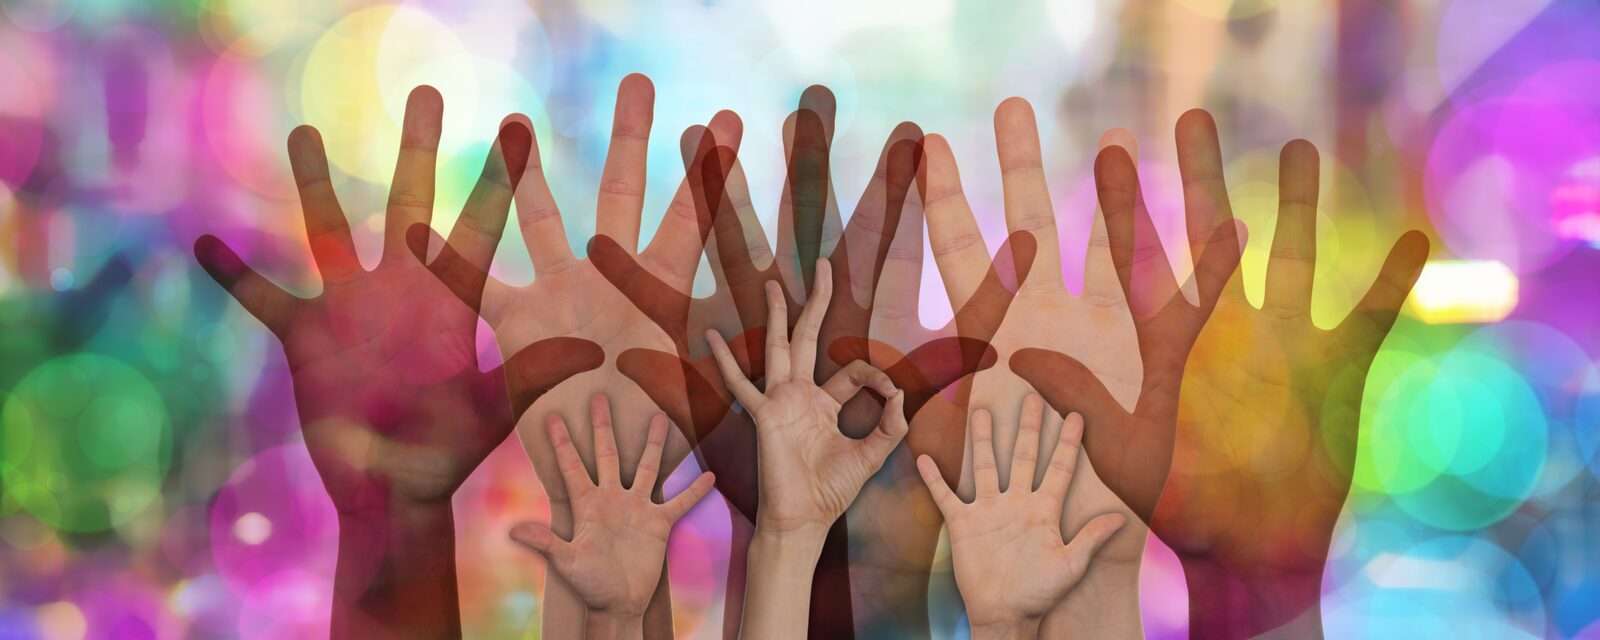 Erhobene Hände vor farbigem Hintergrund - Symbolbild für freiwillige Helfer_innen